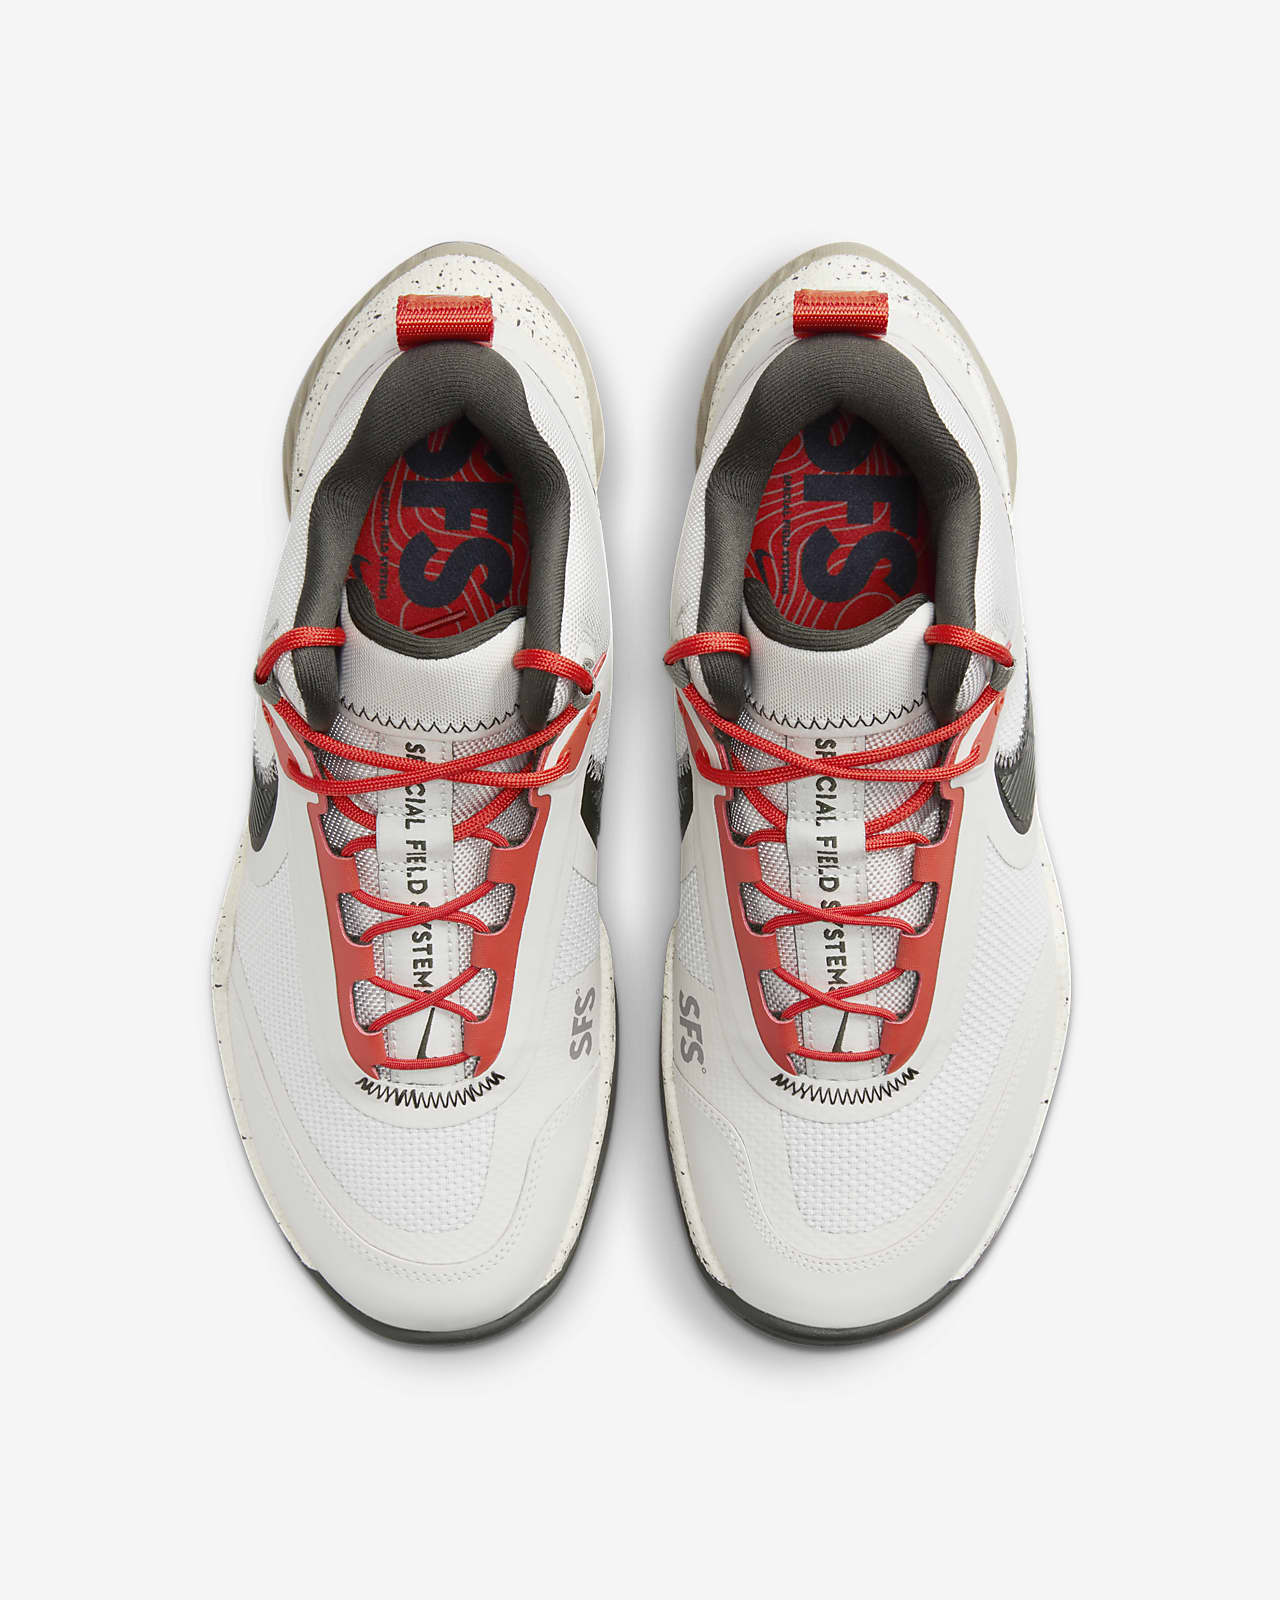 Nike React SFB Carbon Men’s Elite Outdoor Shoes